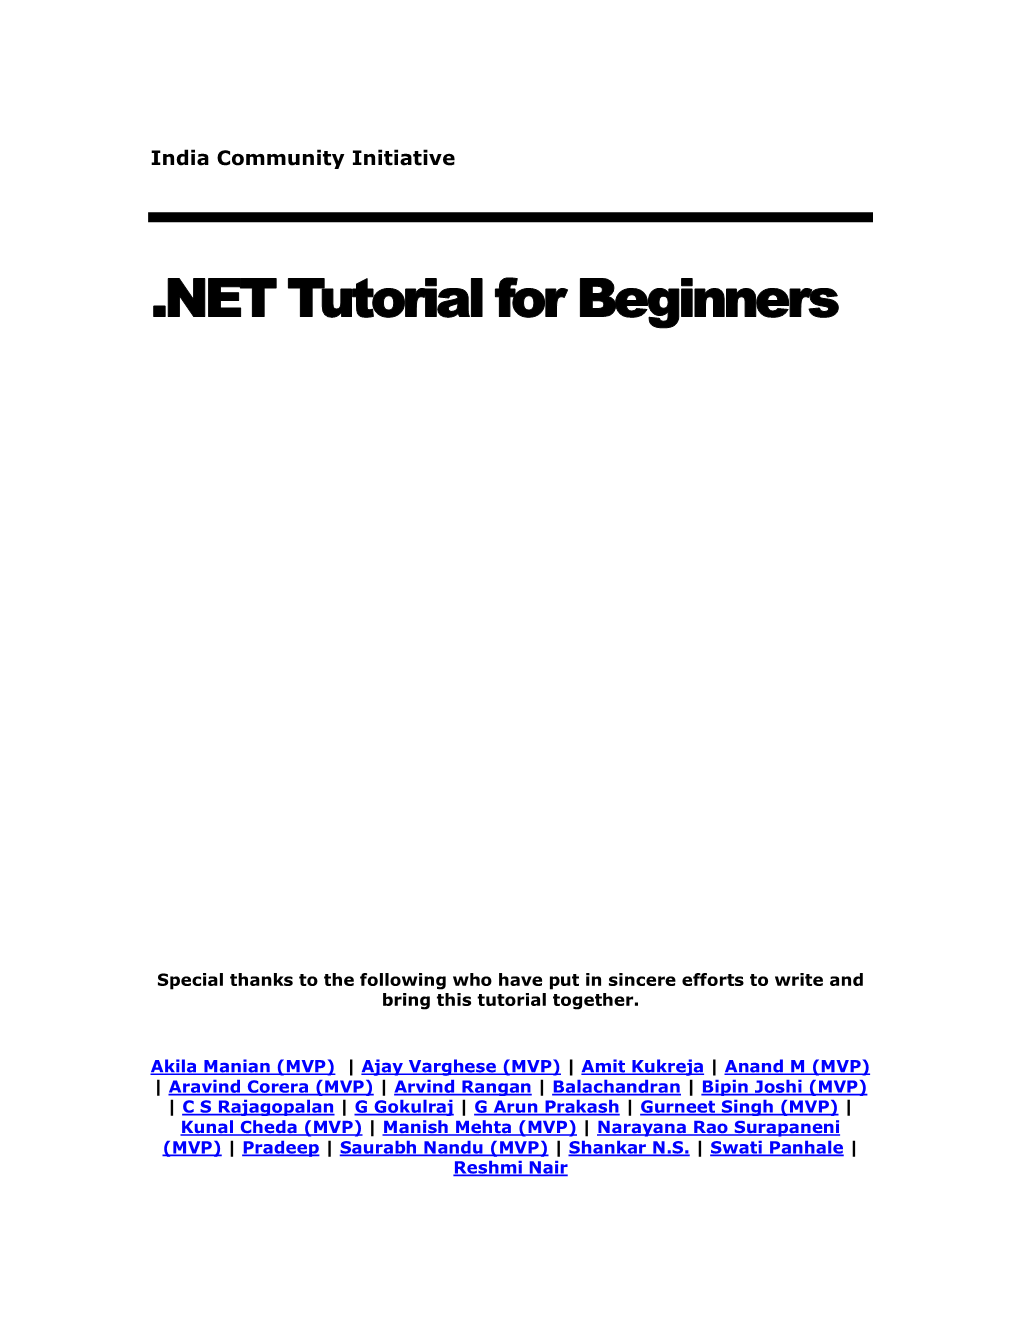 NET Tutorial for Beginners